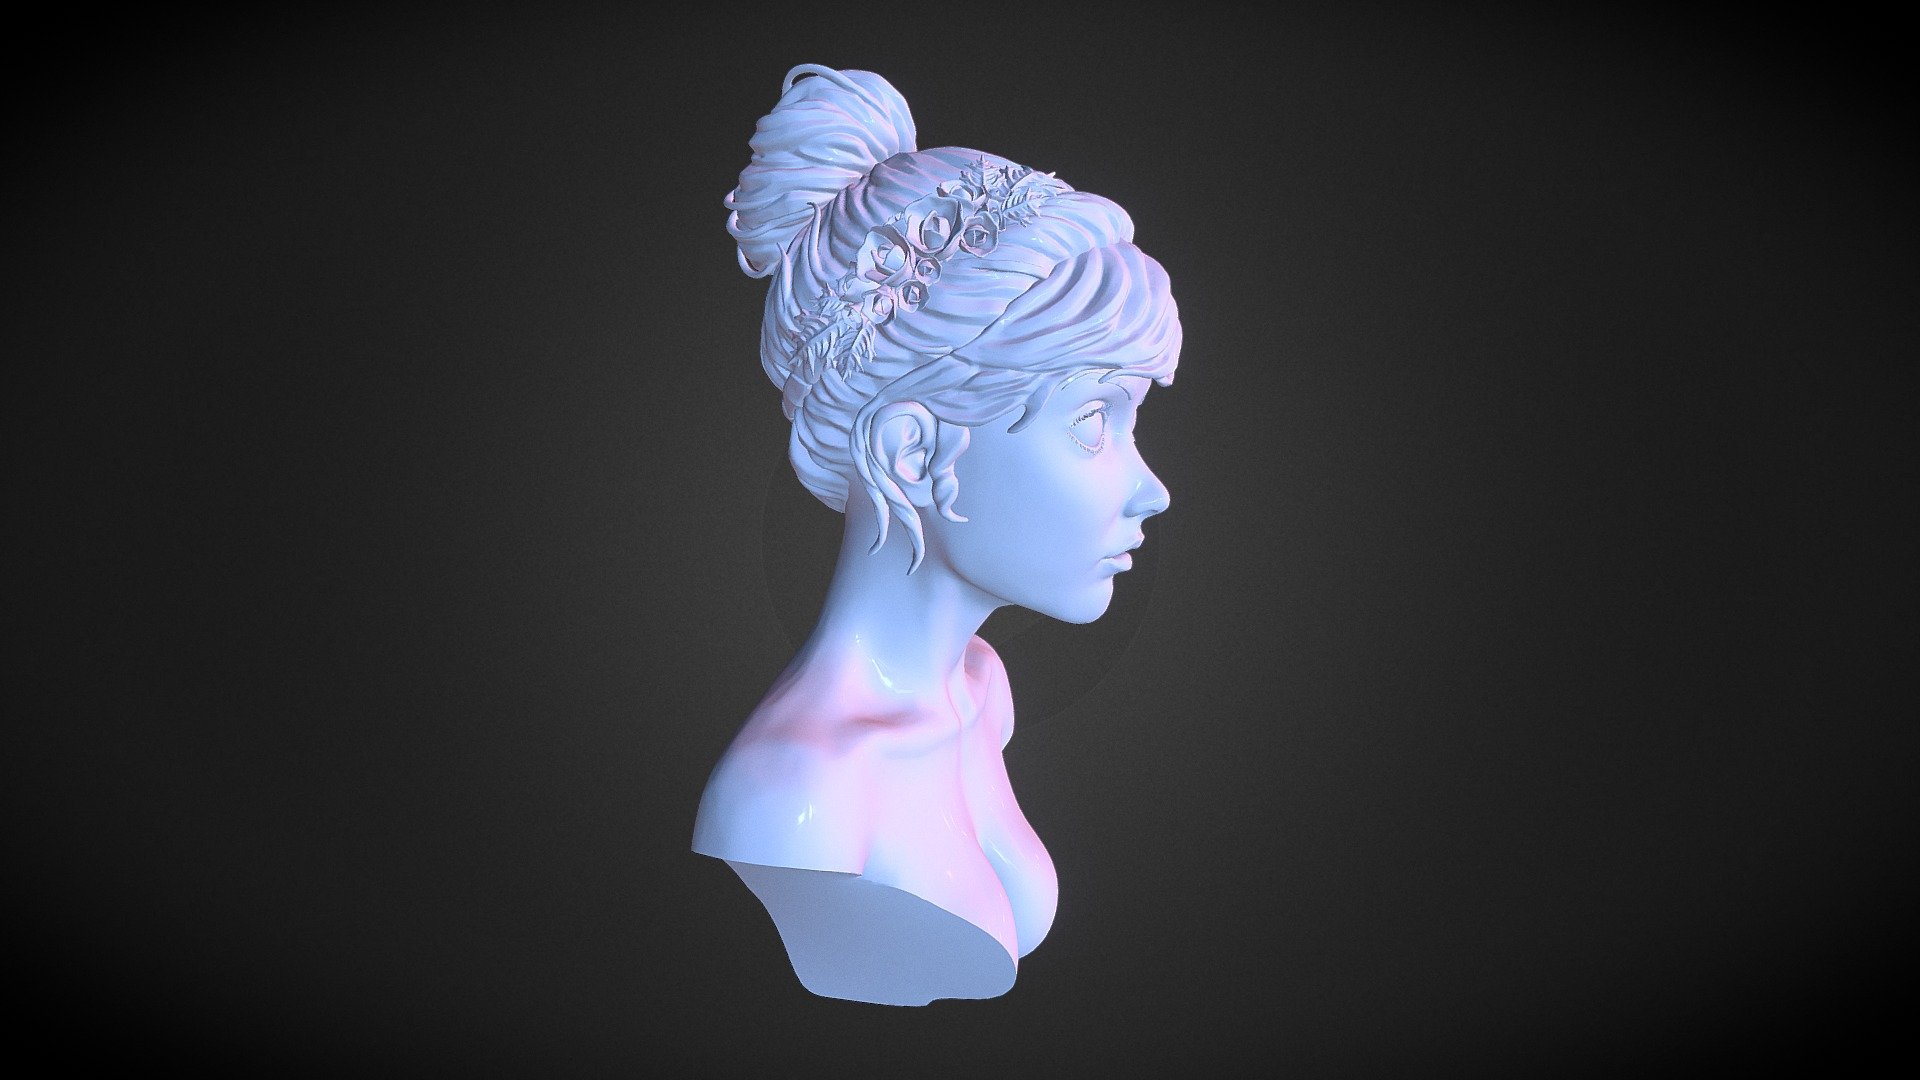 zBrush female head sculpt - Female Head Sculpt - 3D model by Shannon Lau (@shannon) 3d model